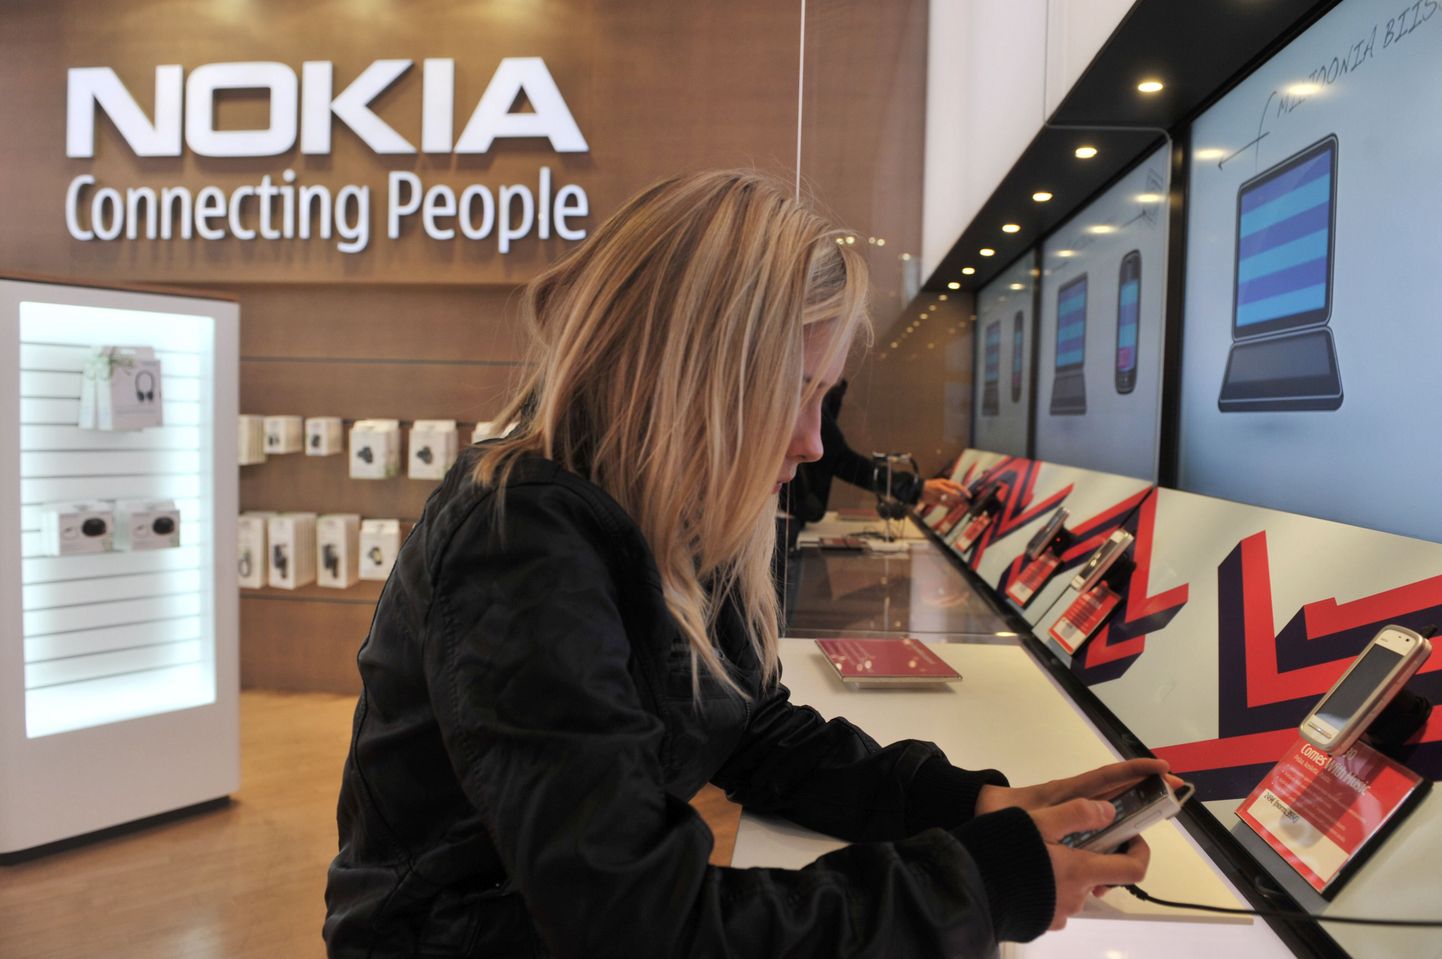 Jaapani reitinguagentuur Rating & Investment Information langetas Soome riigireitingu väljavaate stabiilselt negatiivseks. Üheks põhjuseks oli Nokia mahajäämus nutitelefonide turu, mis on kogu riigi majandust nõrgestanud.